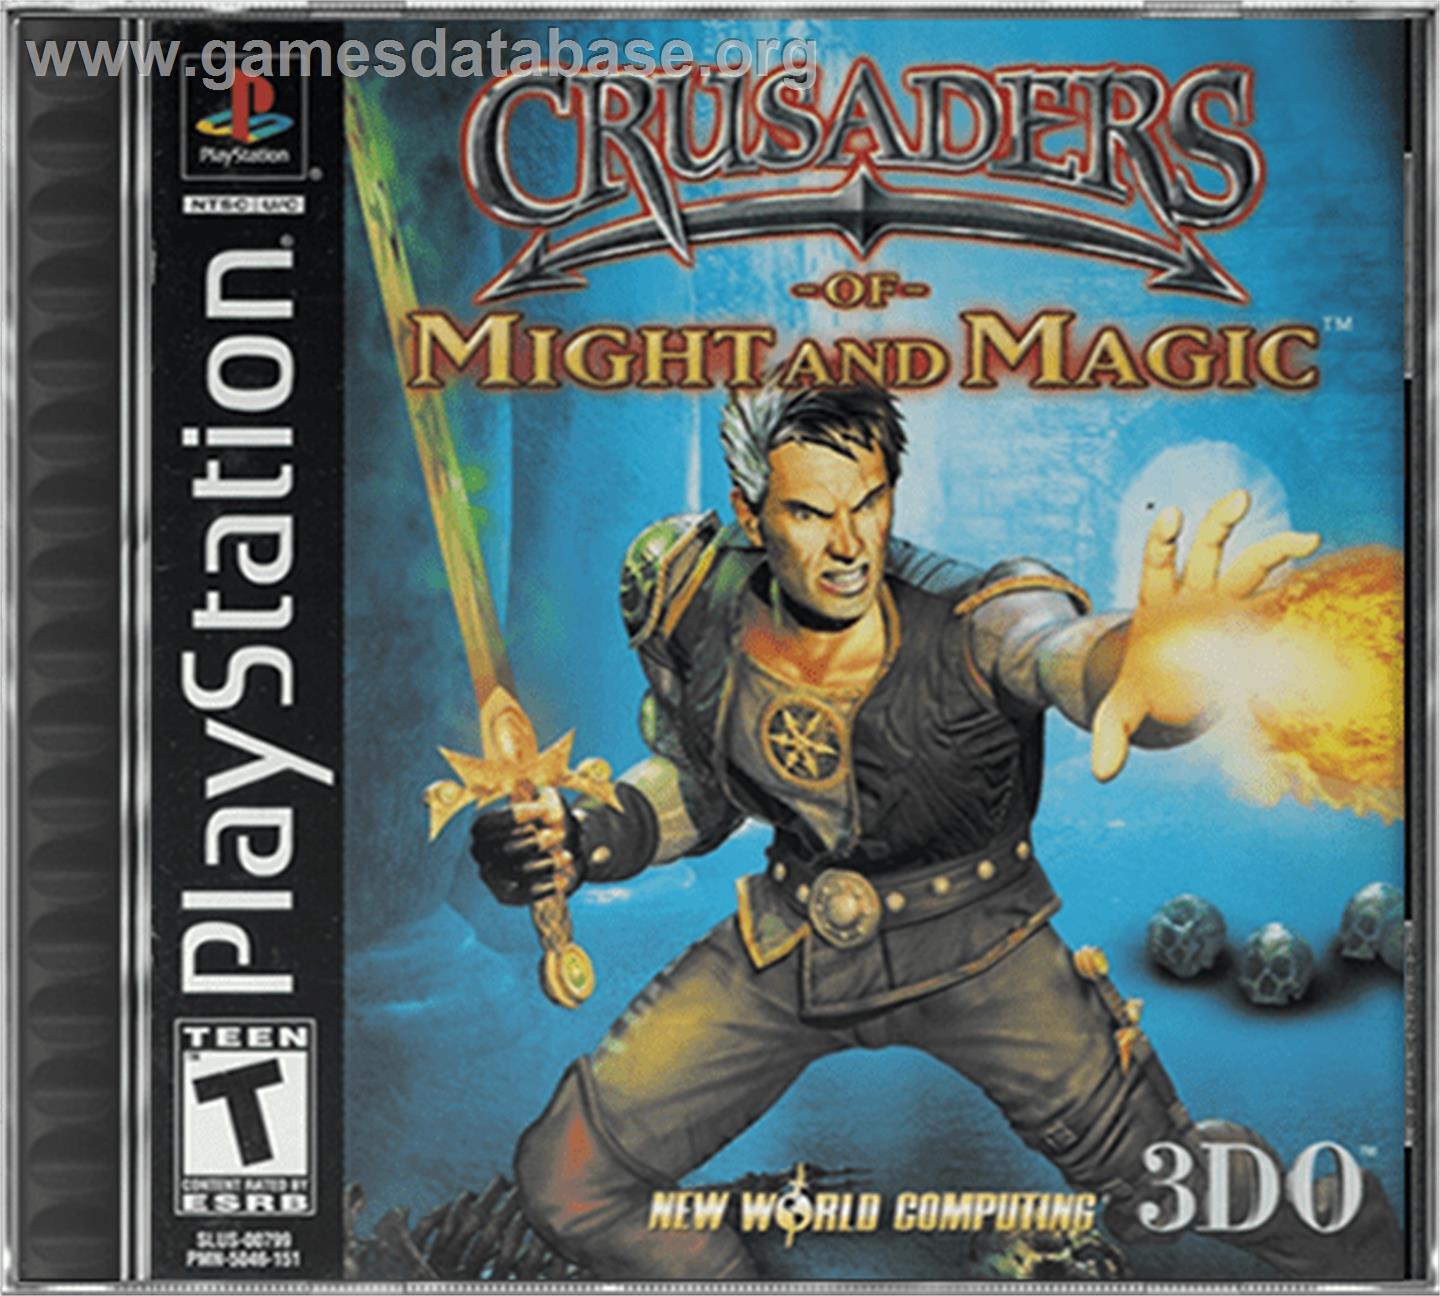 Crusaders of Might and Magic - Sony Playstation - Artwork - Box